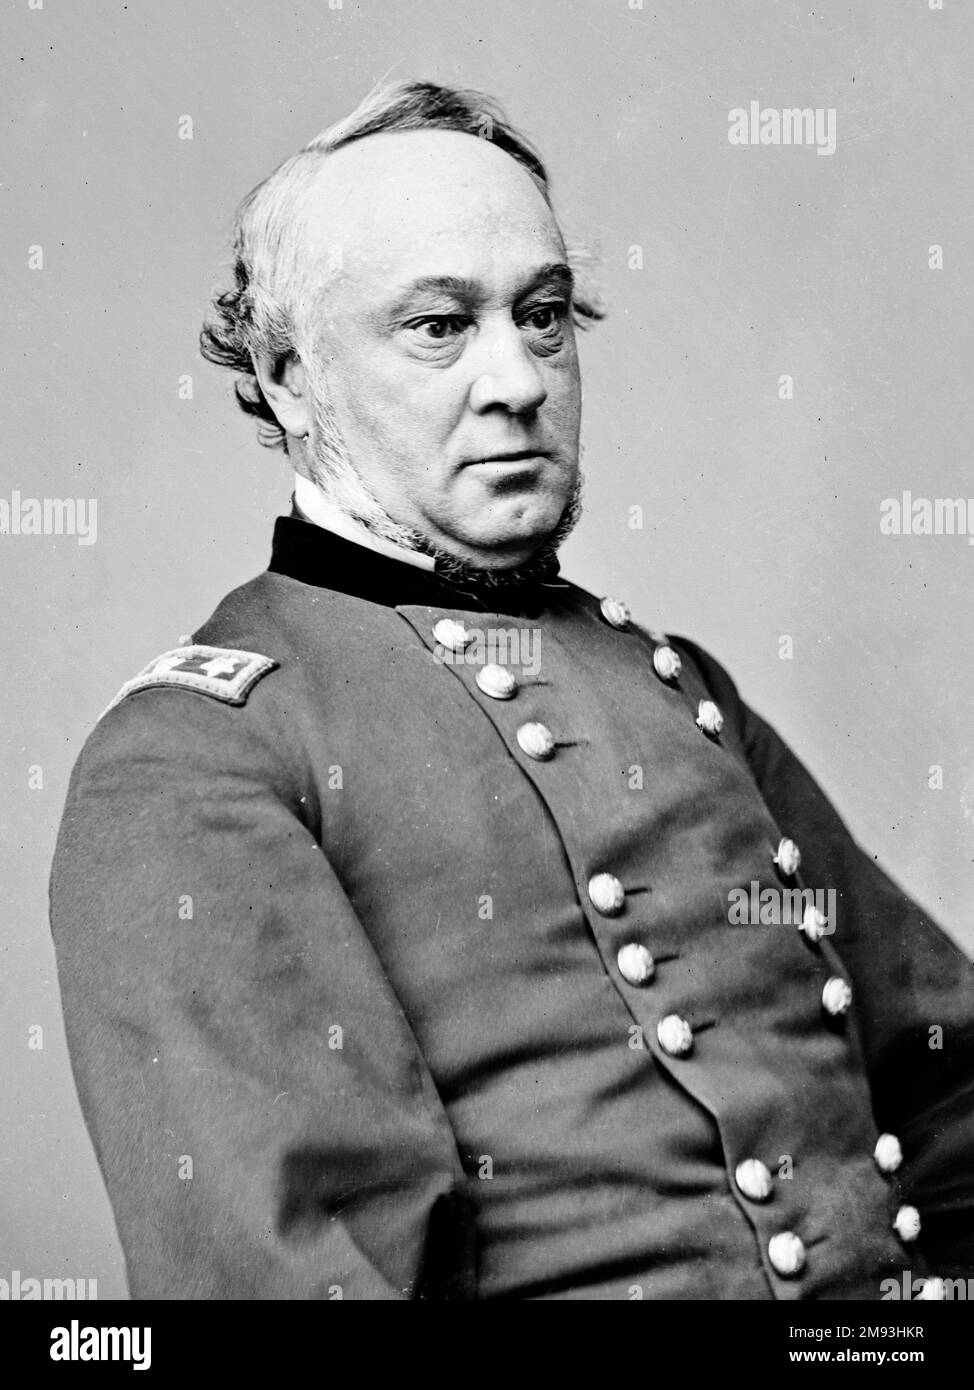 Major General Henry wager Halleck, der während des Amerikanischen Bürgerkriegs General der US-Armee befehligte, bevor er zum Quatermeister-General ernannt wurde. Stockfoto